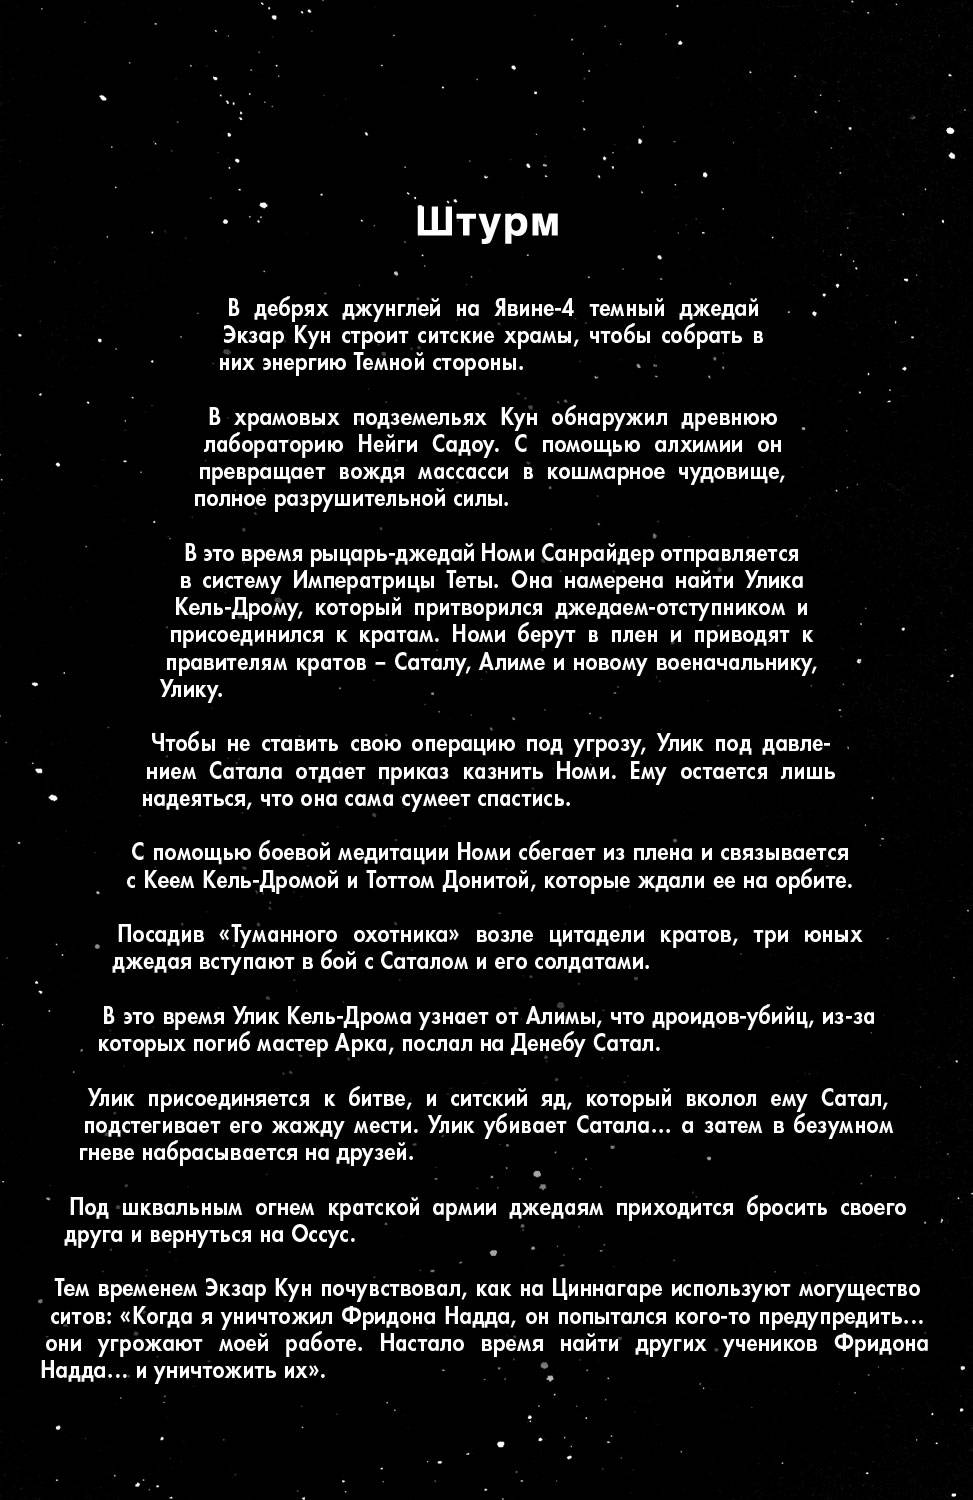 Звездные Войны: Сказания о Джедаях: Темные Повелители Ситов №6 онлайн